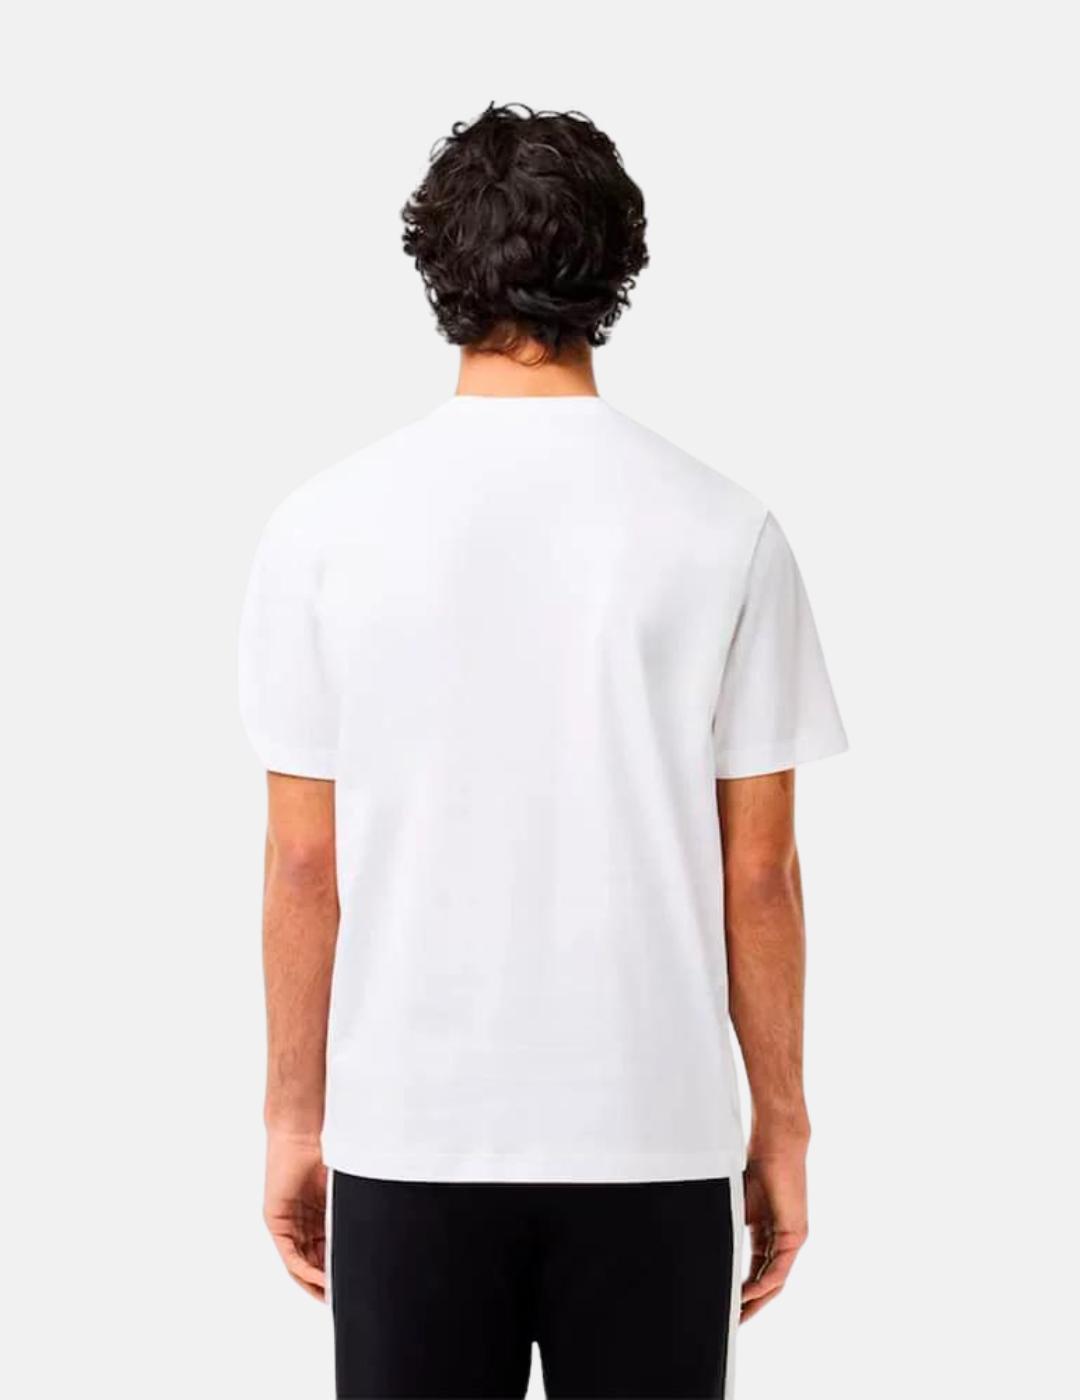 Camiseta Lacoste blanca logo azul hombre